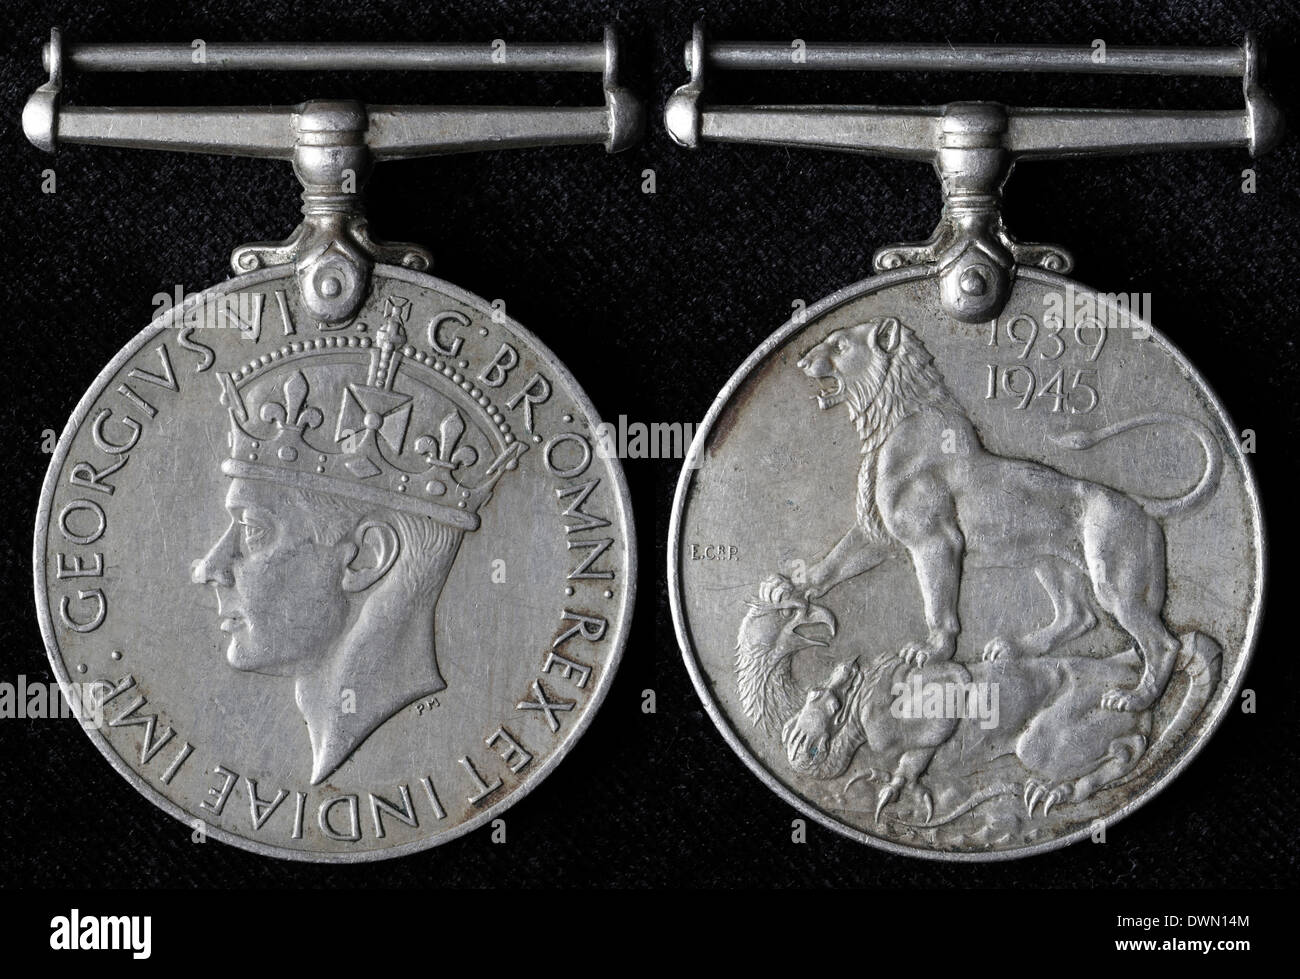 Médaille de guerre britannique (1939-1945) Banque D'Images